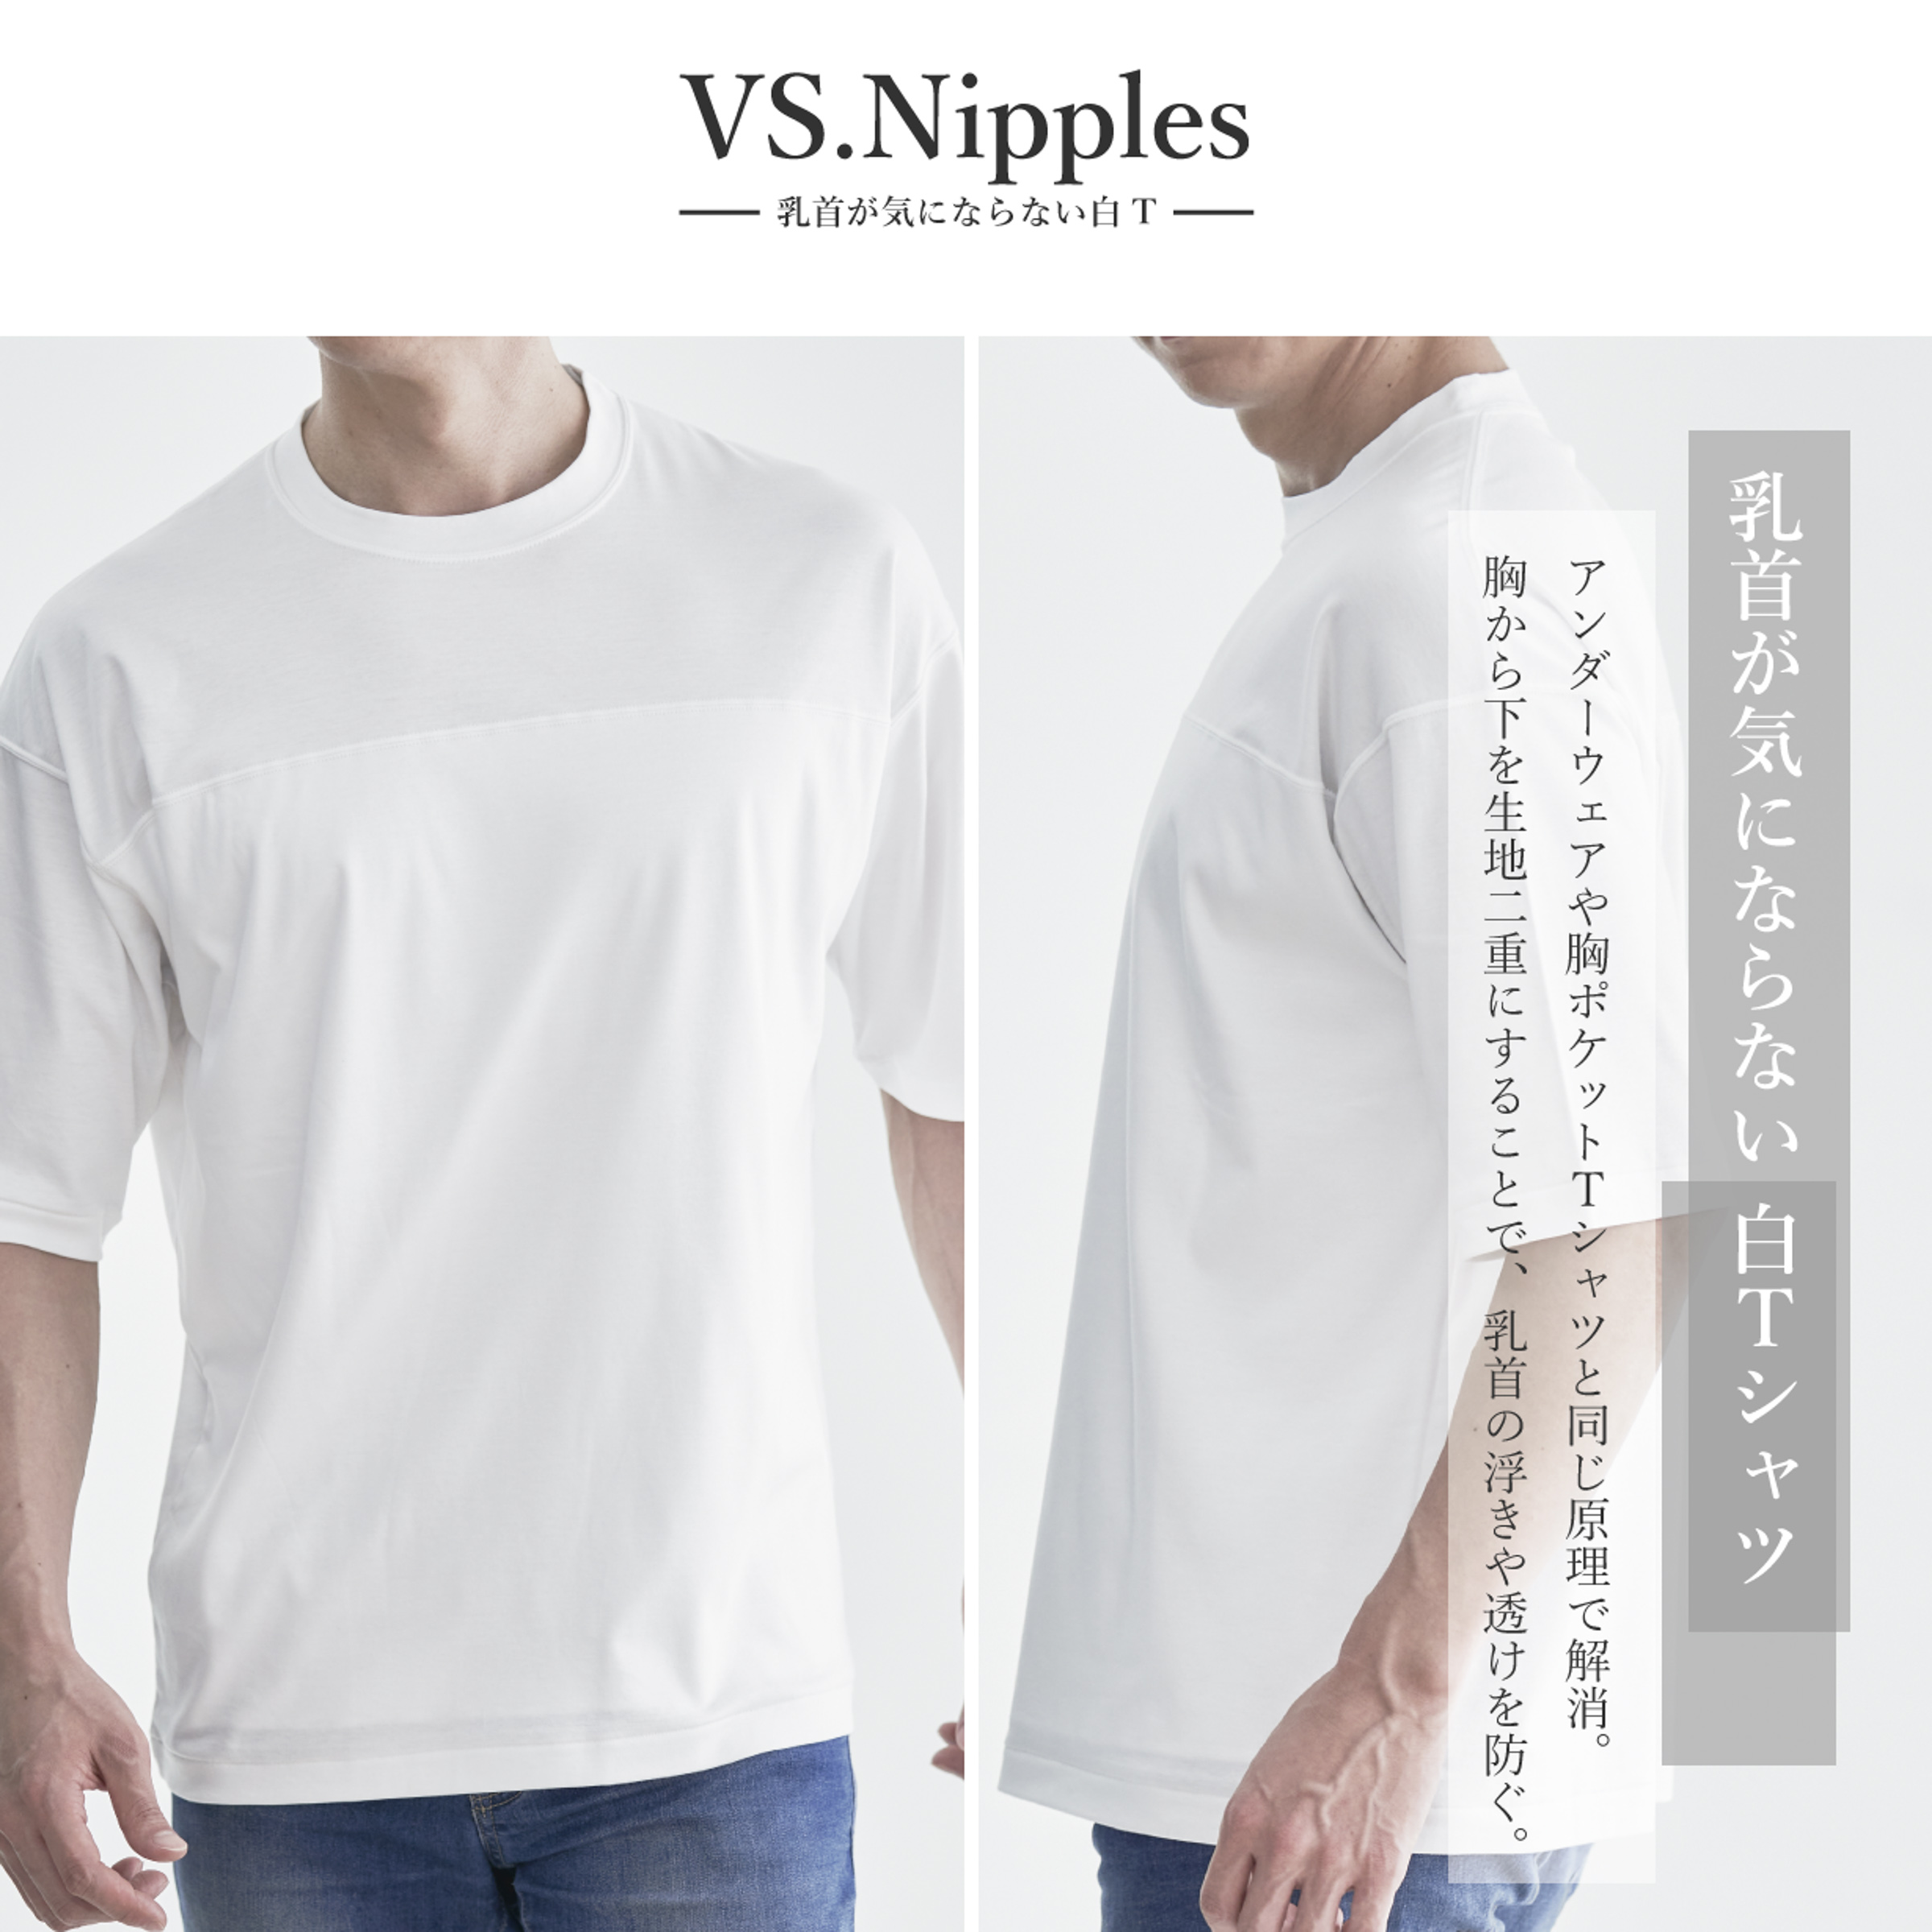 日本製白Tシャツ専門店から「乳首が気にならない白T」登場、特別価格で